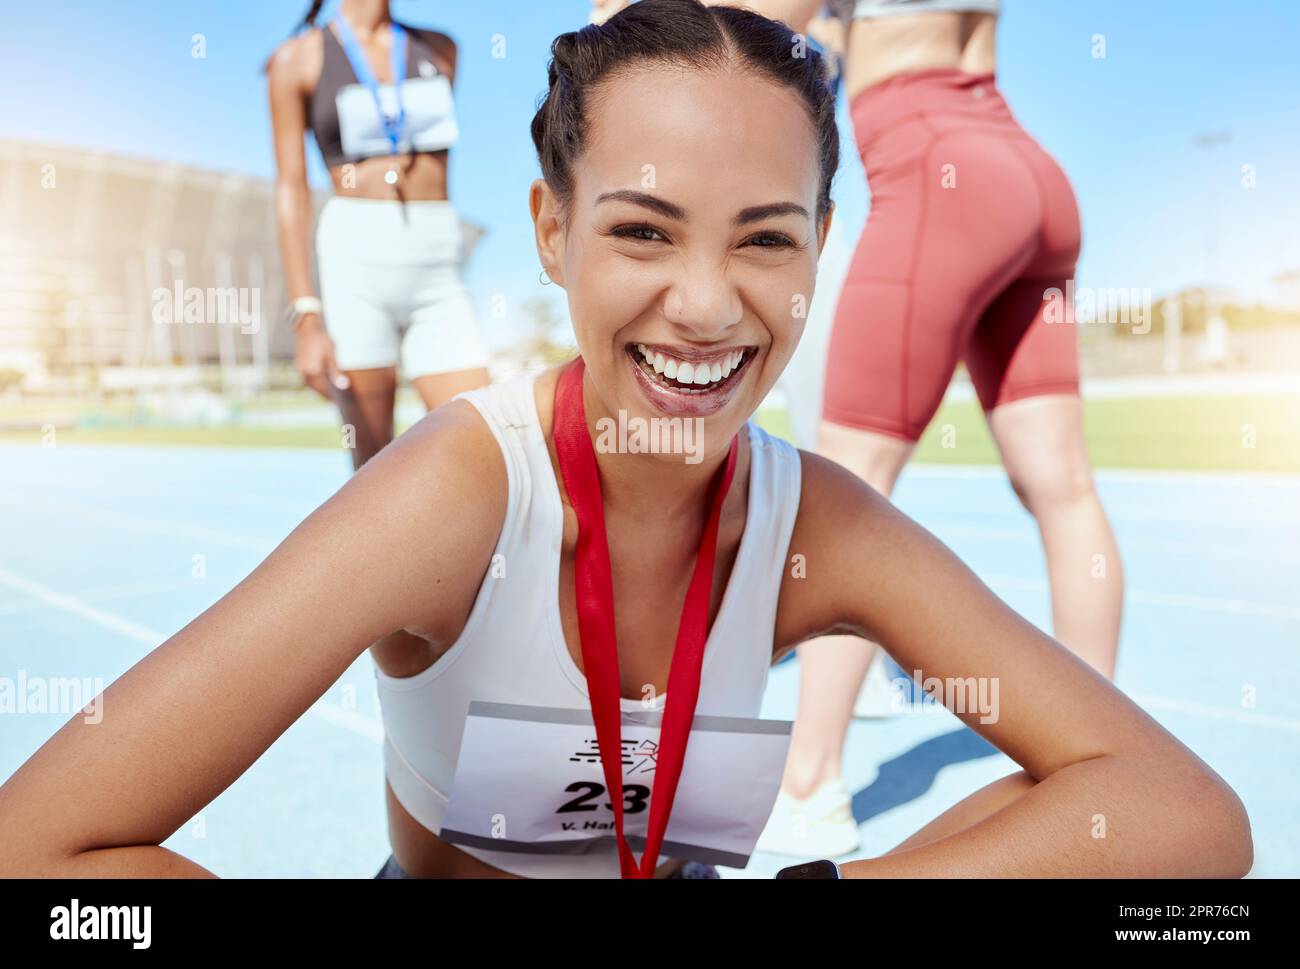 Primer retrato de mujer atlética de raza mixta con una medalla de competir en evento deportivo. Atleta latino activo en forma sonriente sintiéndose orgulloso después de ganar la carrera de running. Corredor de pista que logra el objetivo Foto de stock